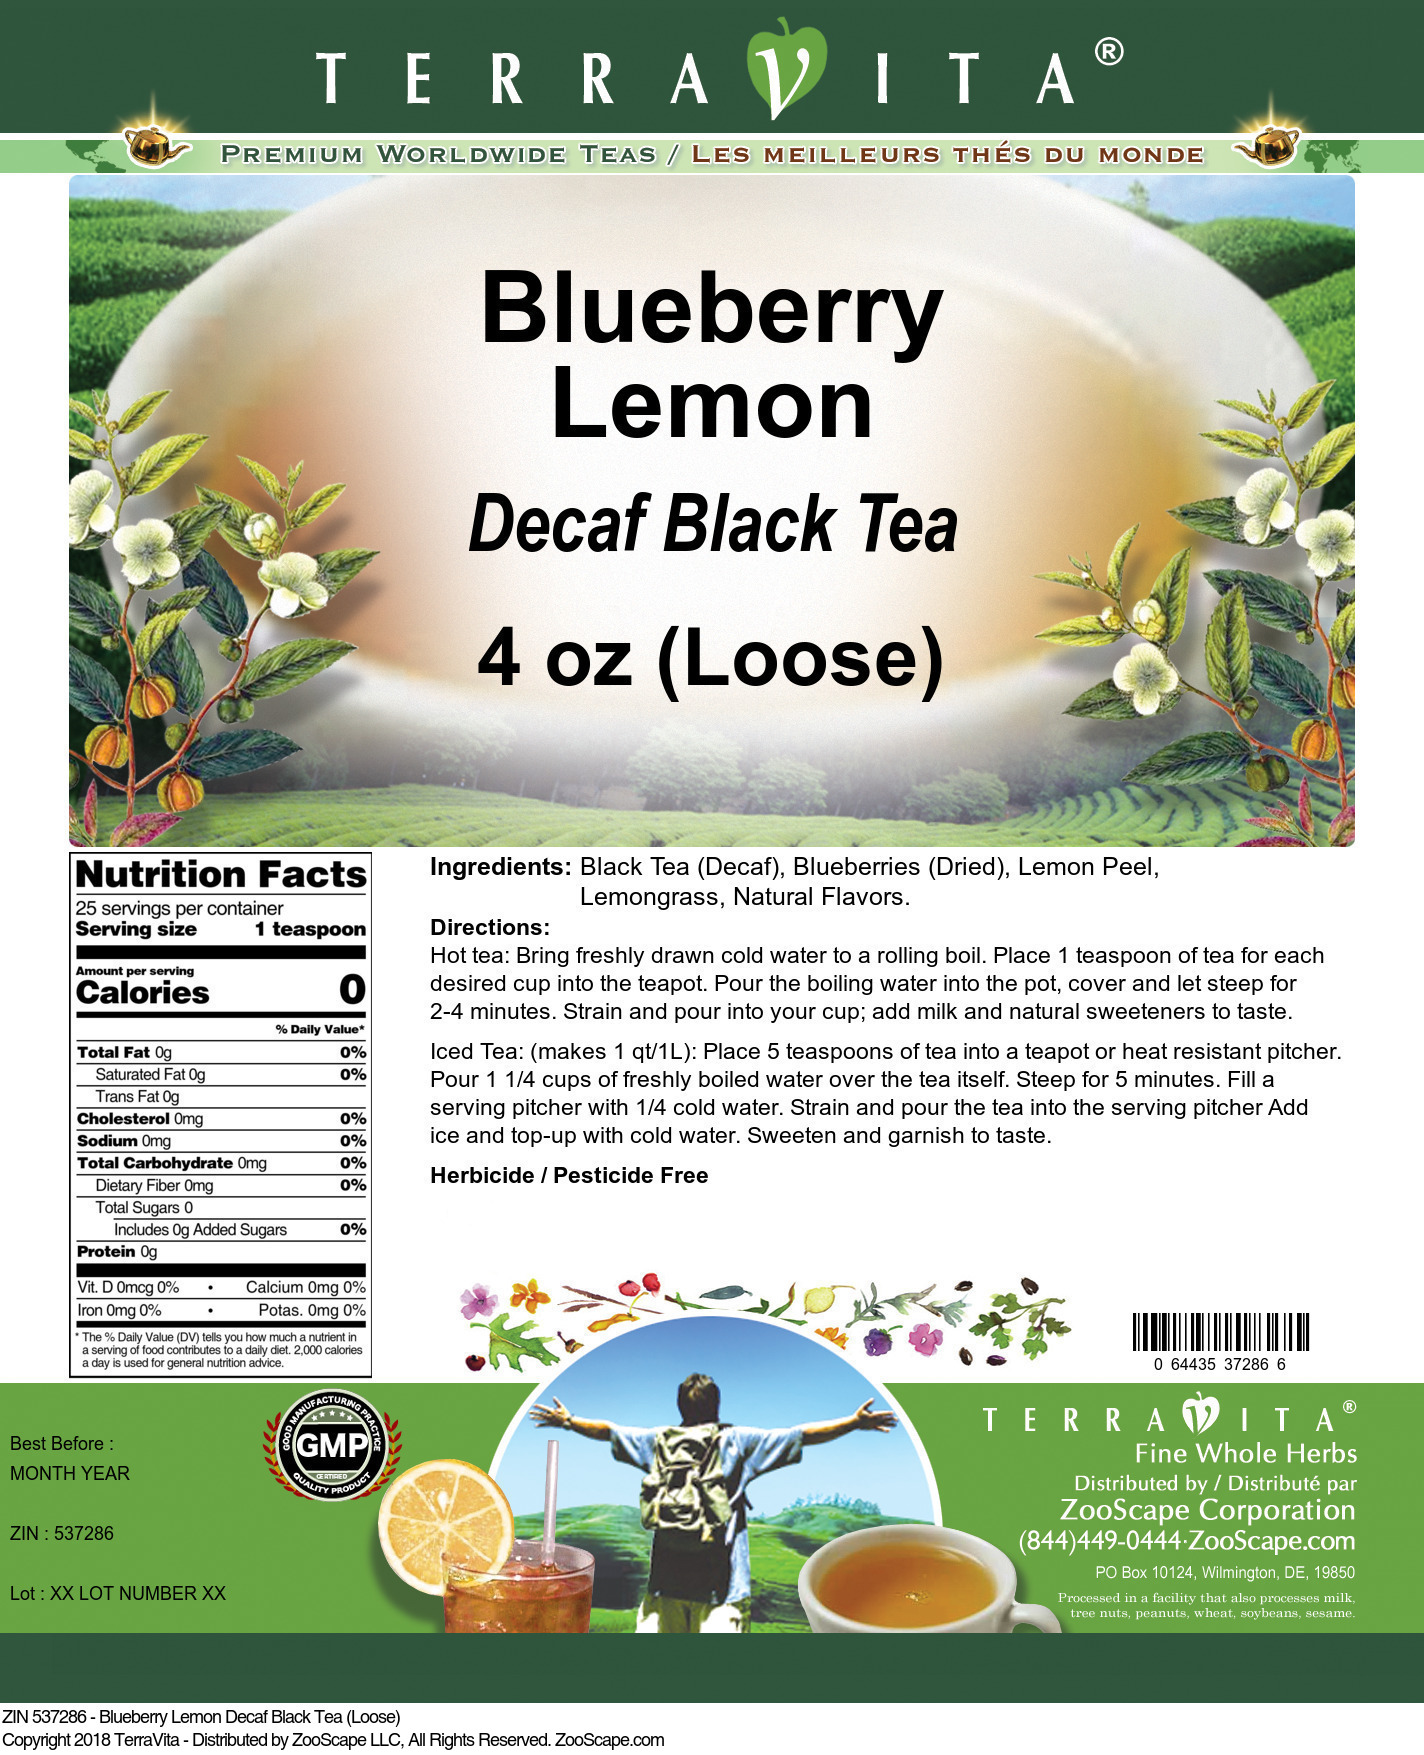 Blueberry Lemon Decaf Black Tea (Loose) - Label